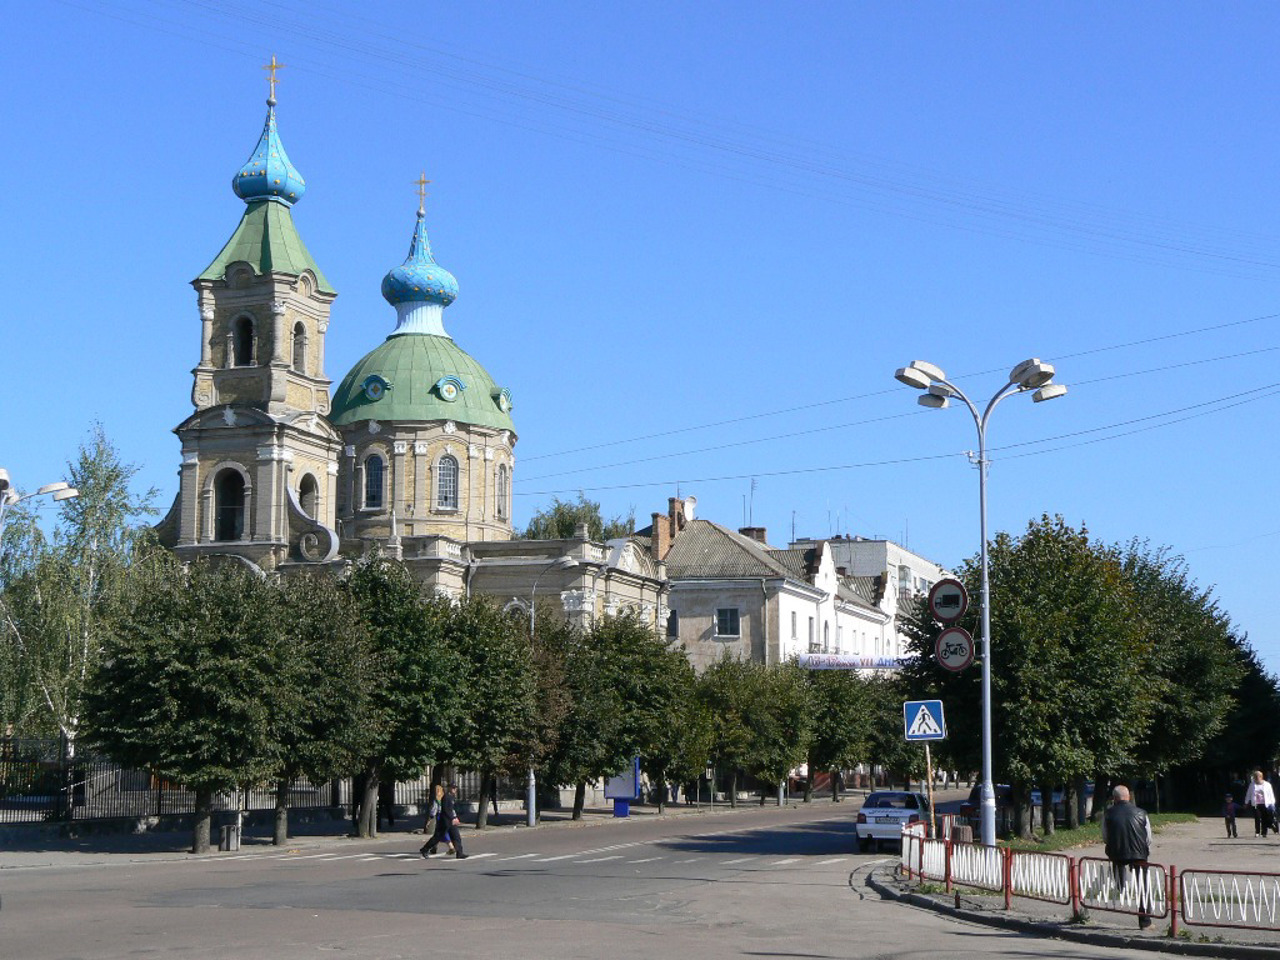 Berdychiv city